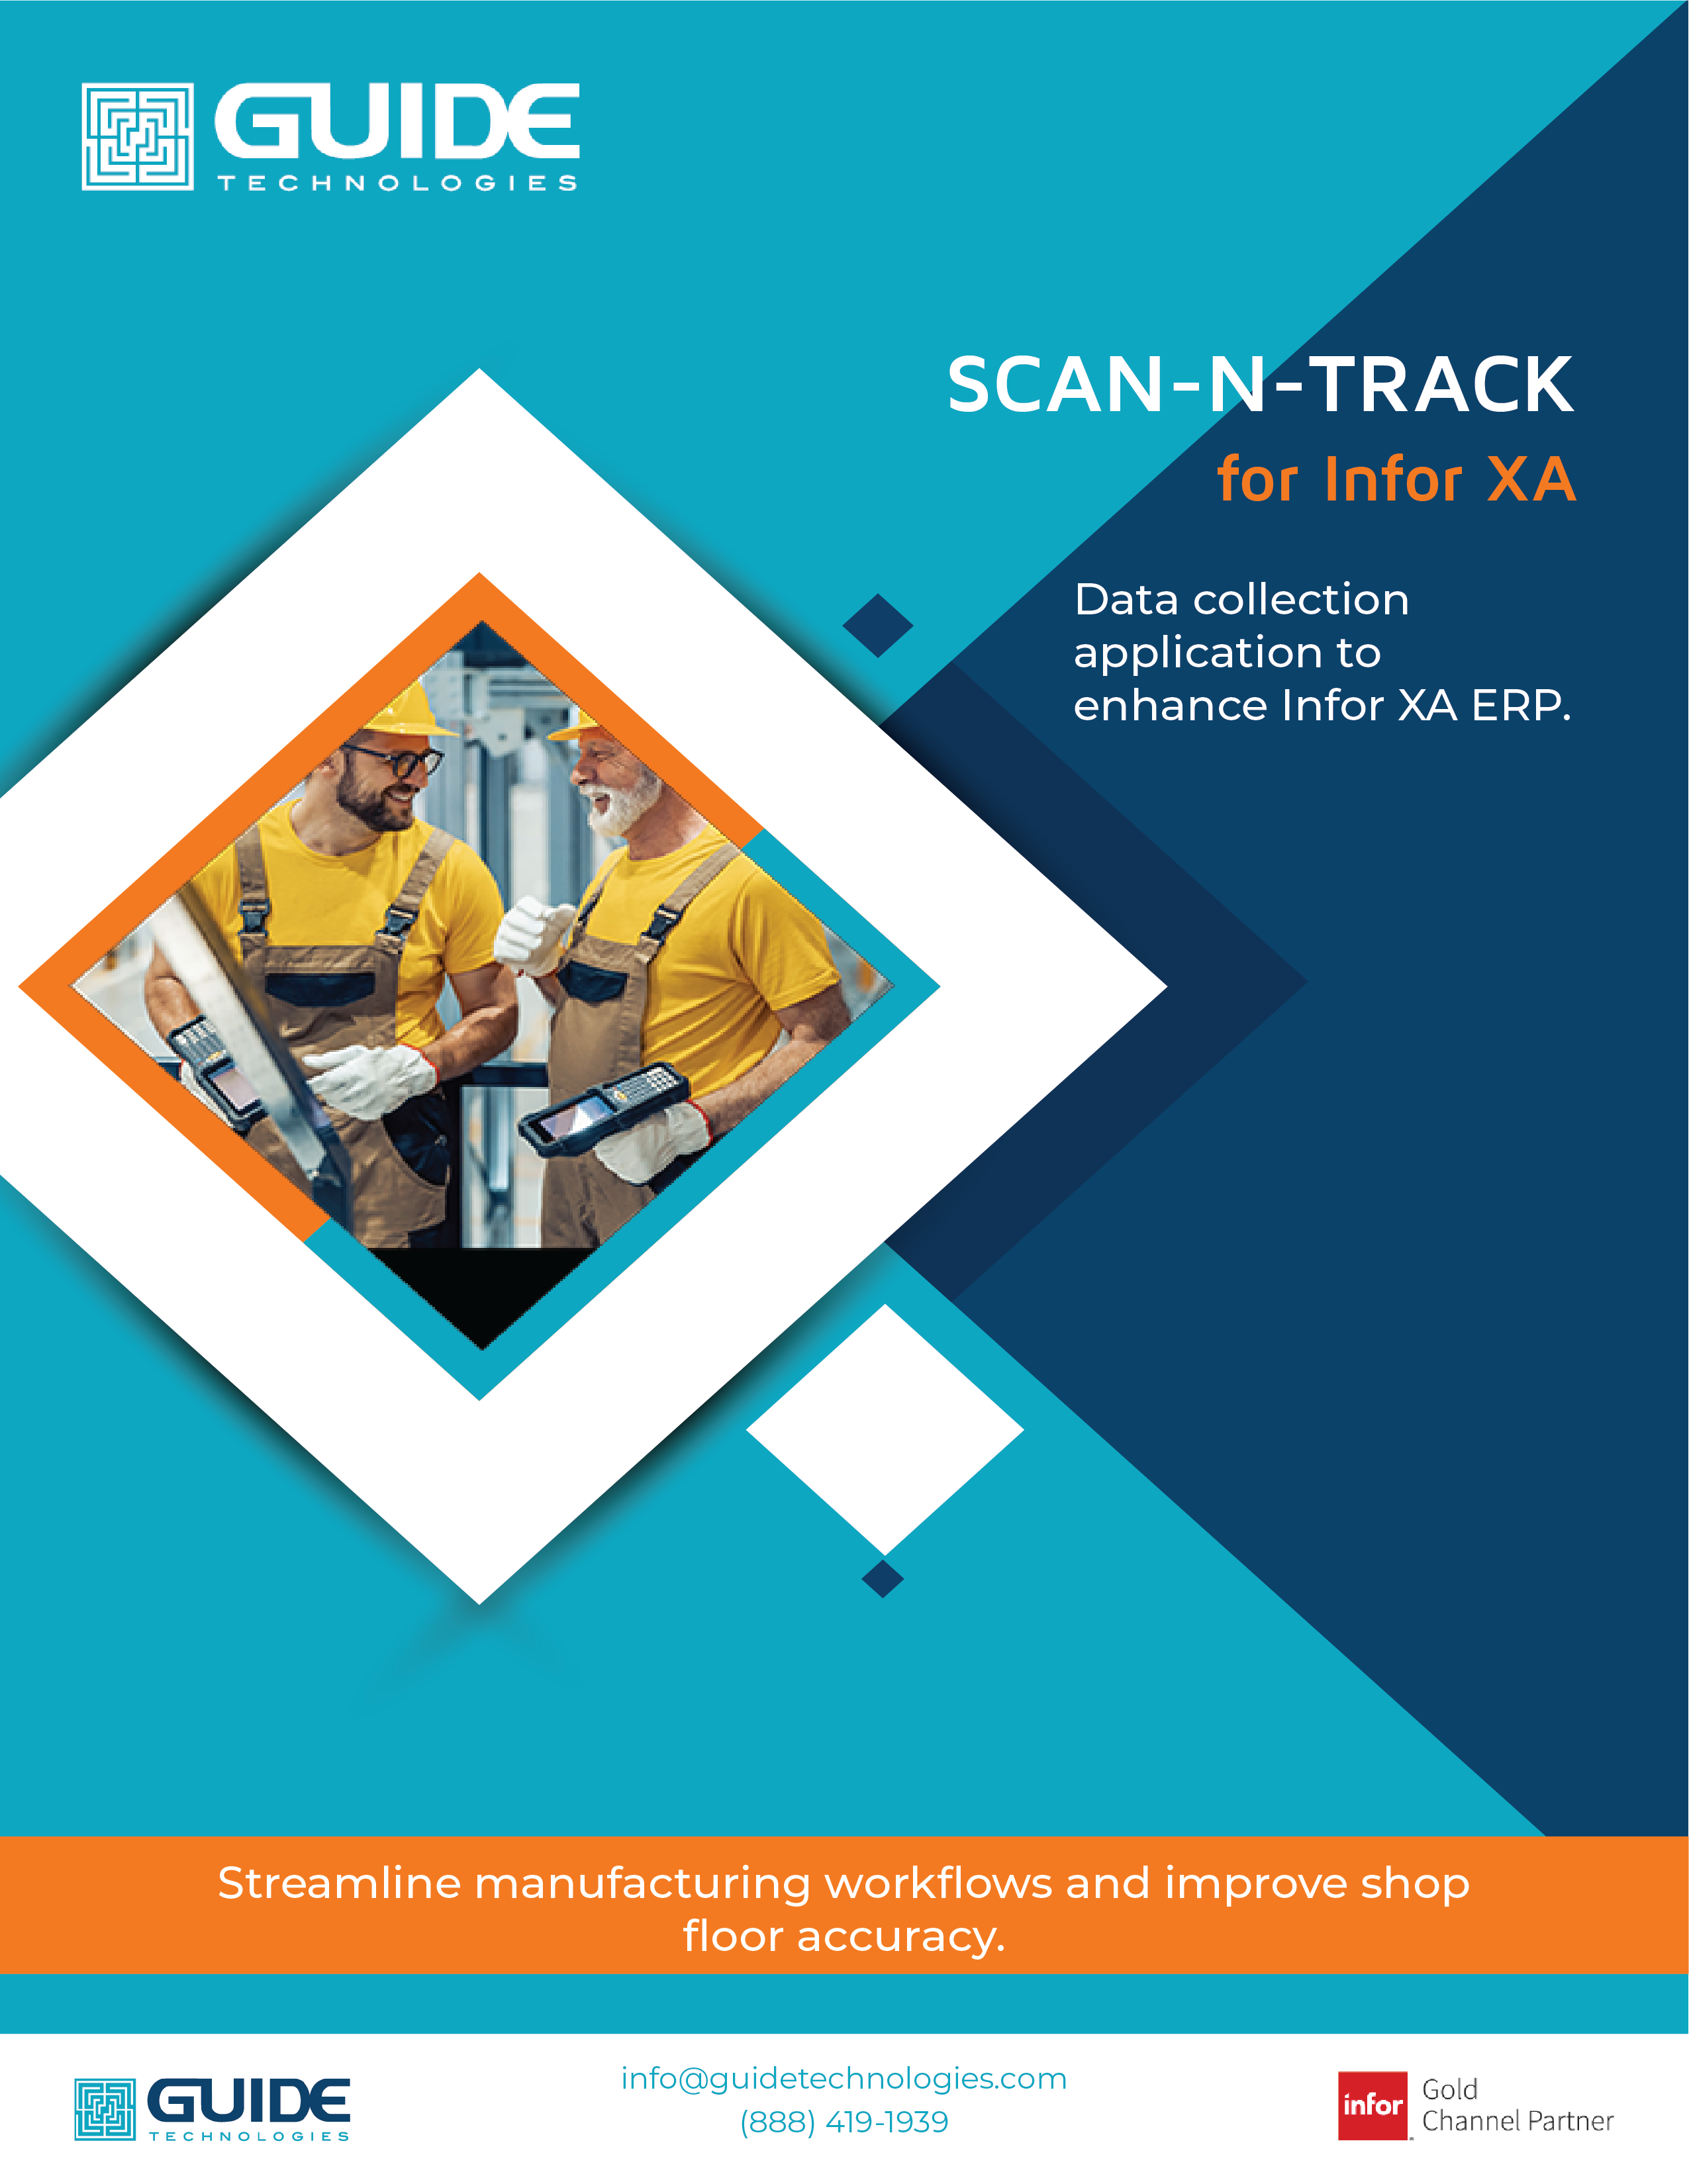 Scan-N-Track for Infor XA